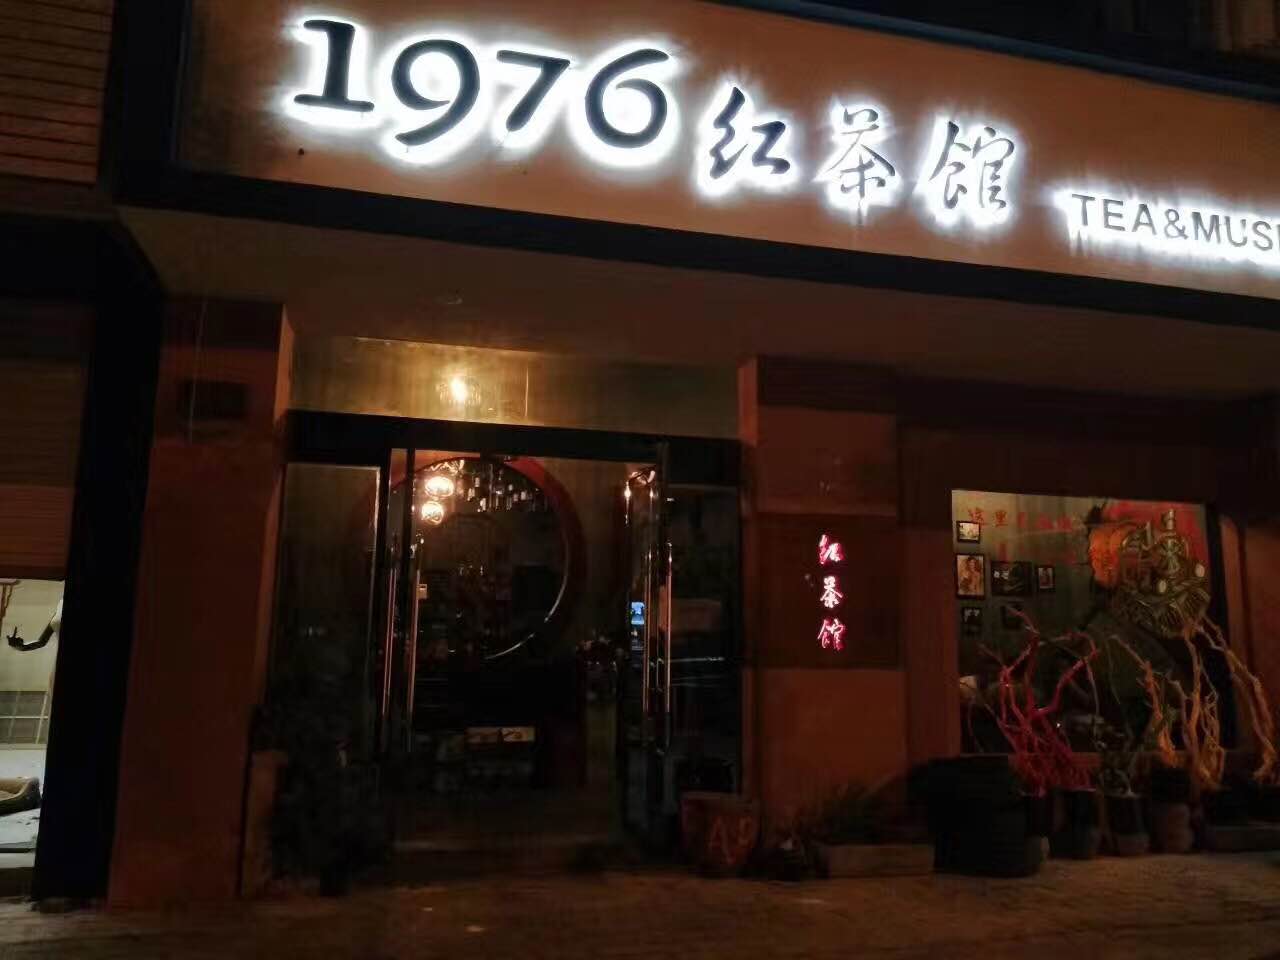 1976红茶馆 音乐酒吧